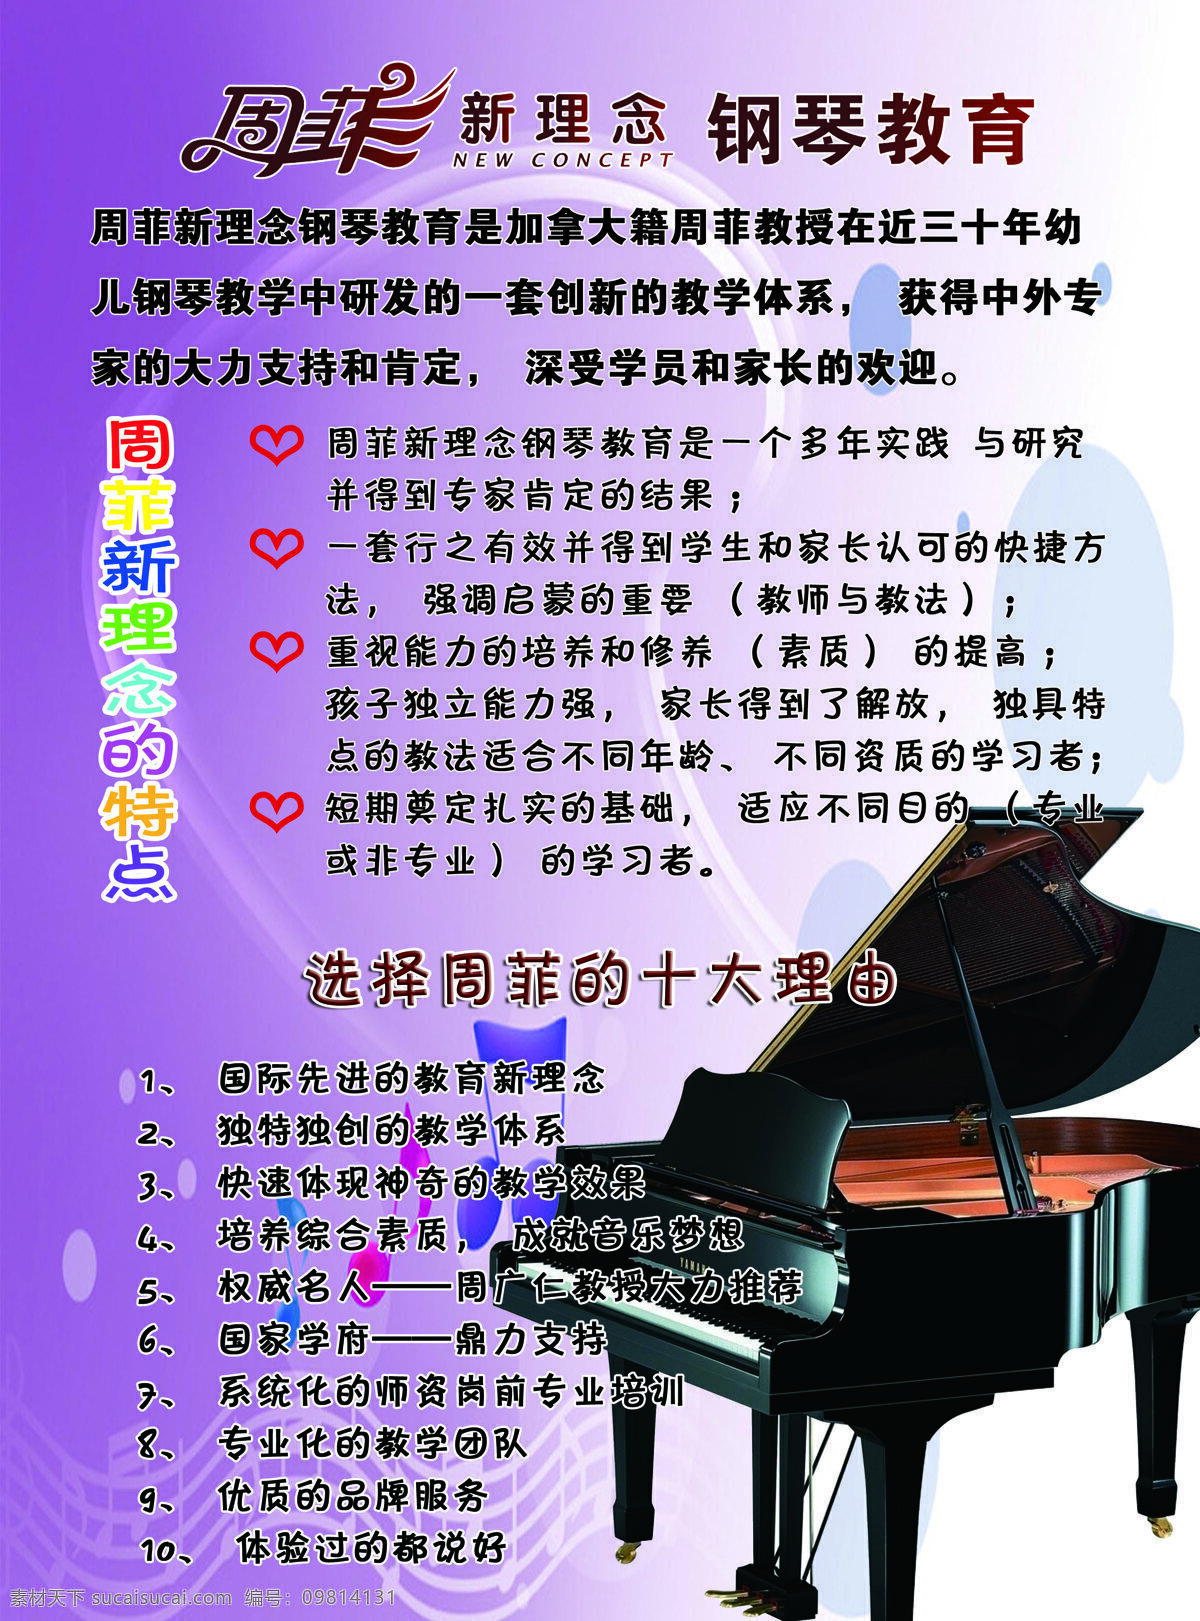 南阳市 卡 钢琴 学校 dm宣传单 彩页 宣传 钢琴教育 儿童钢琴 海报 宣传海报 宣传单 dm